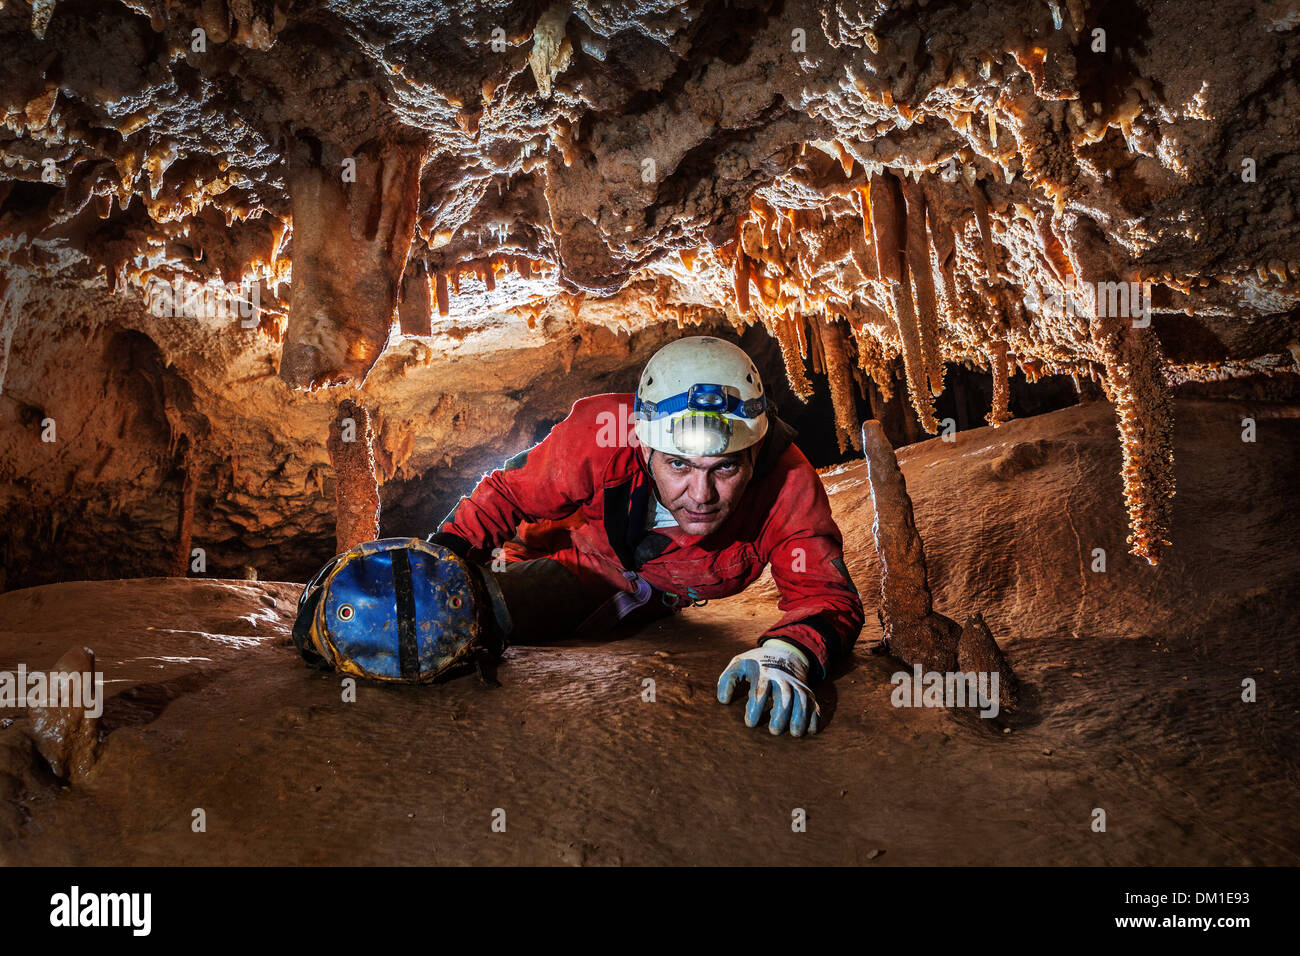 L'homme rampant dans une grotte en Italie Banque D'Images